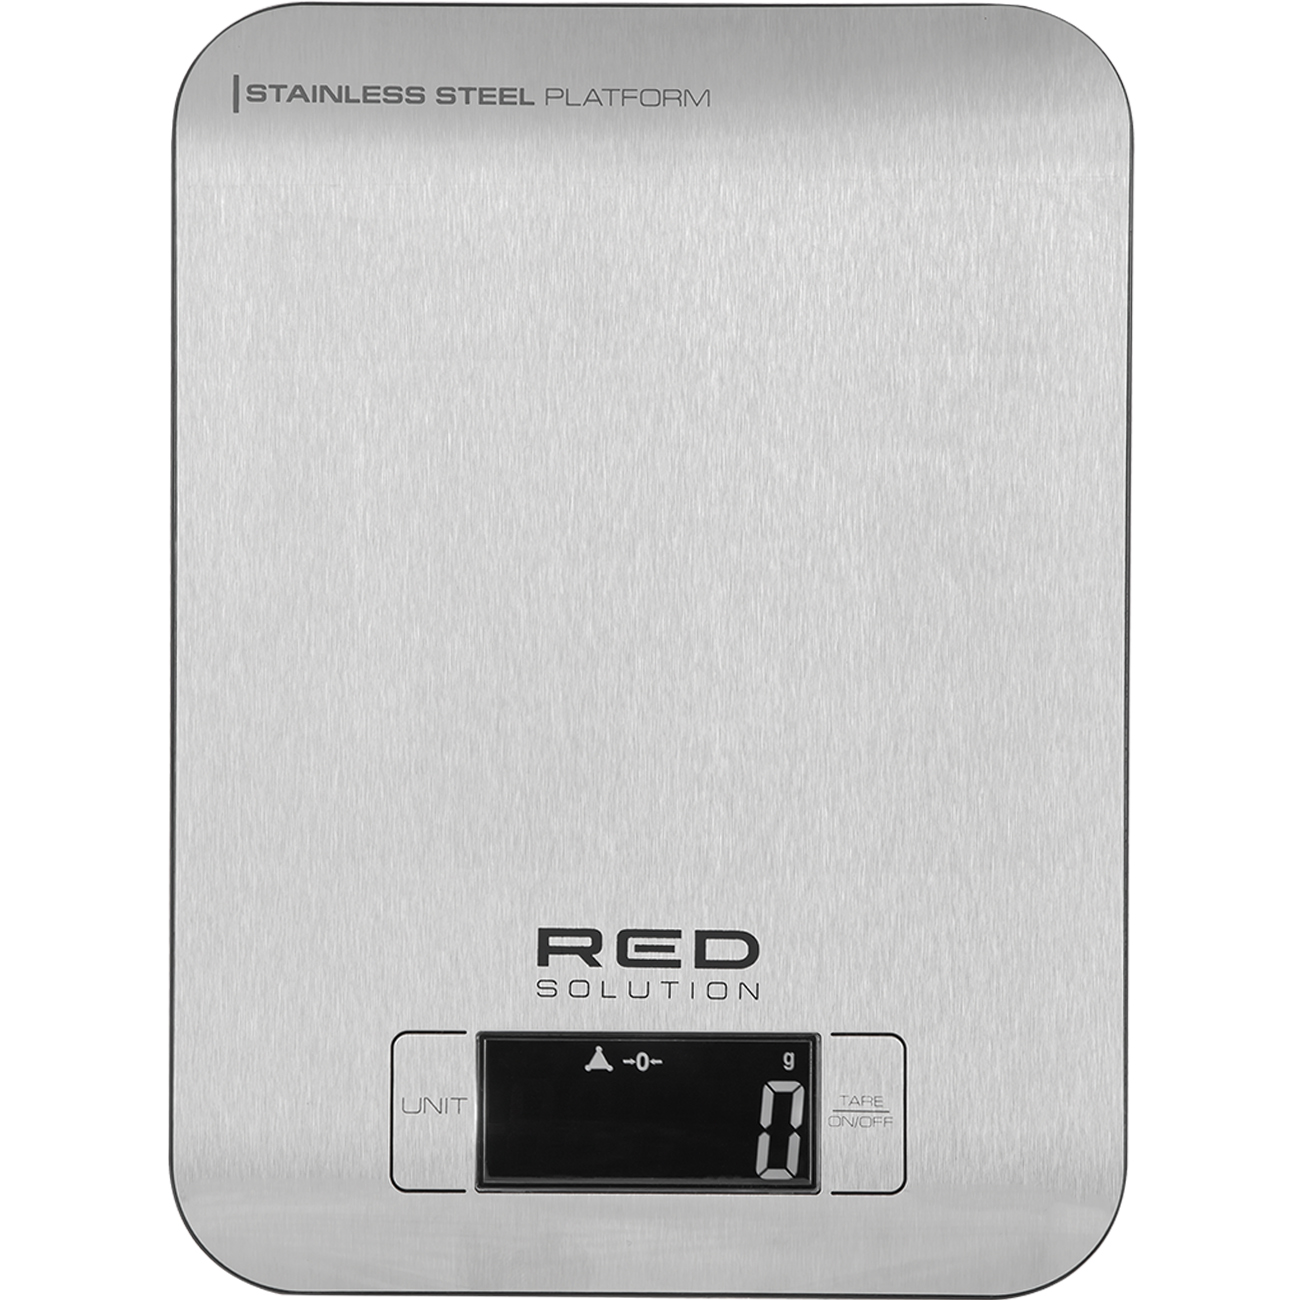 Весы кухонные RED SOLUTION RS-M723 серые весы кухонные red solution rs m723 серые